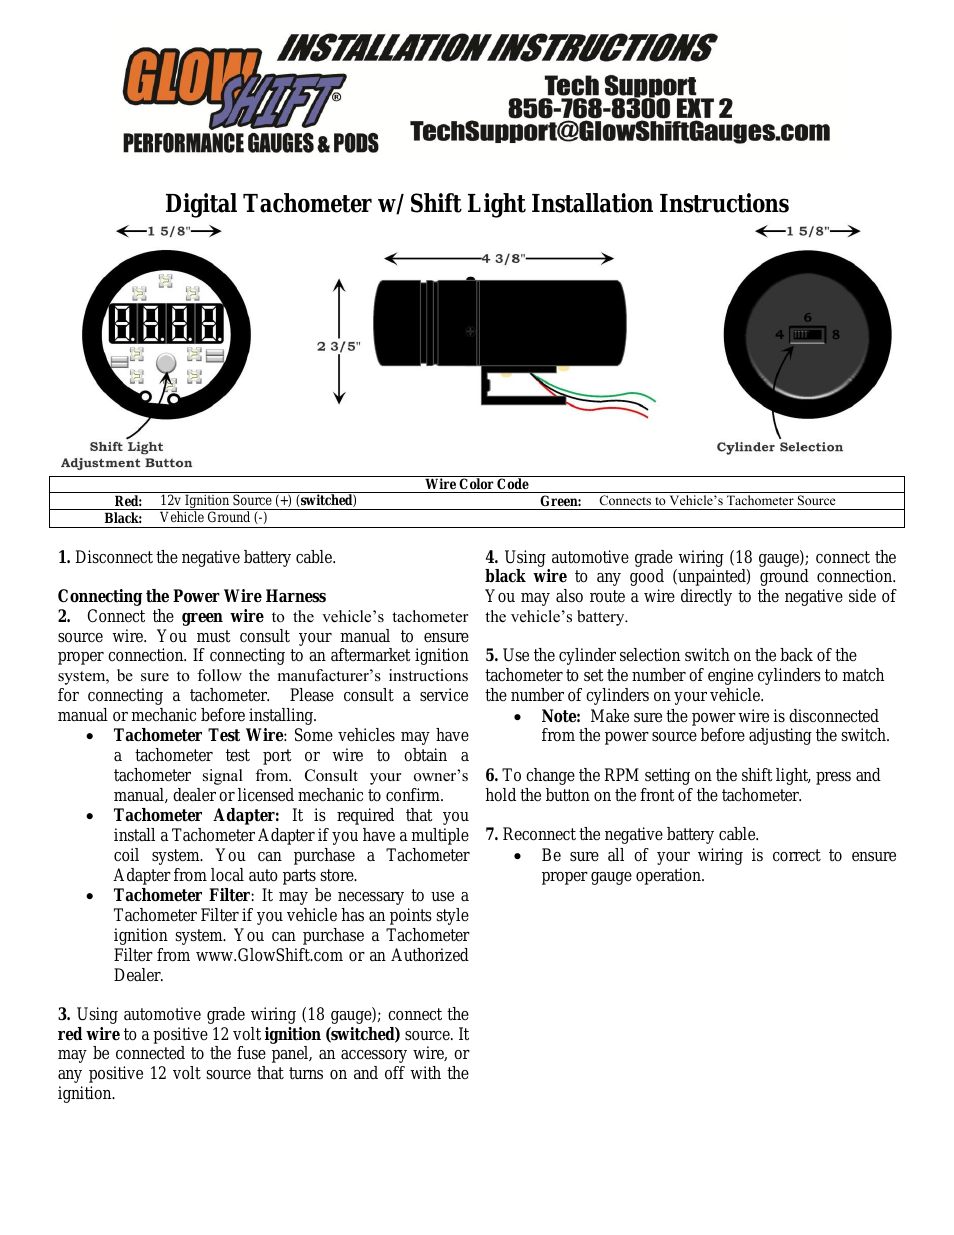 Digital Tachometer w_ Shift Light